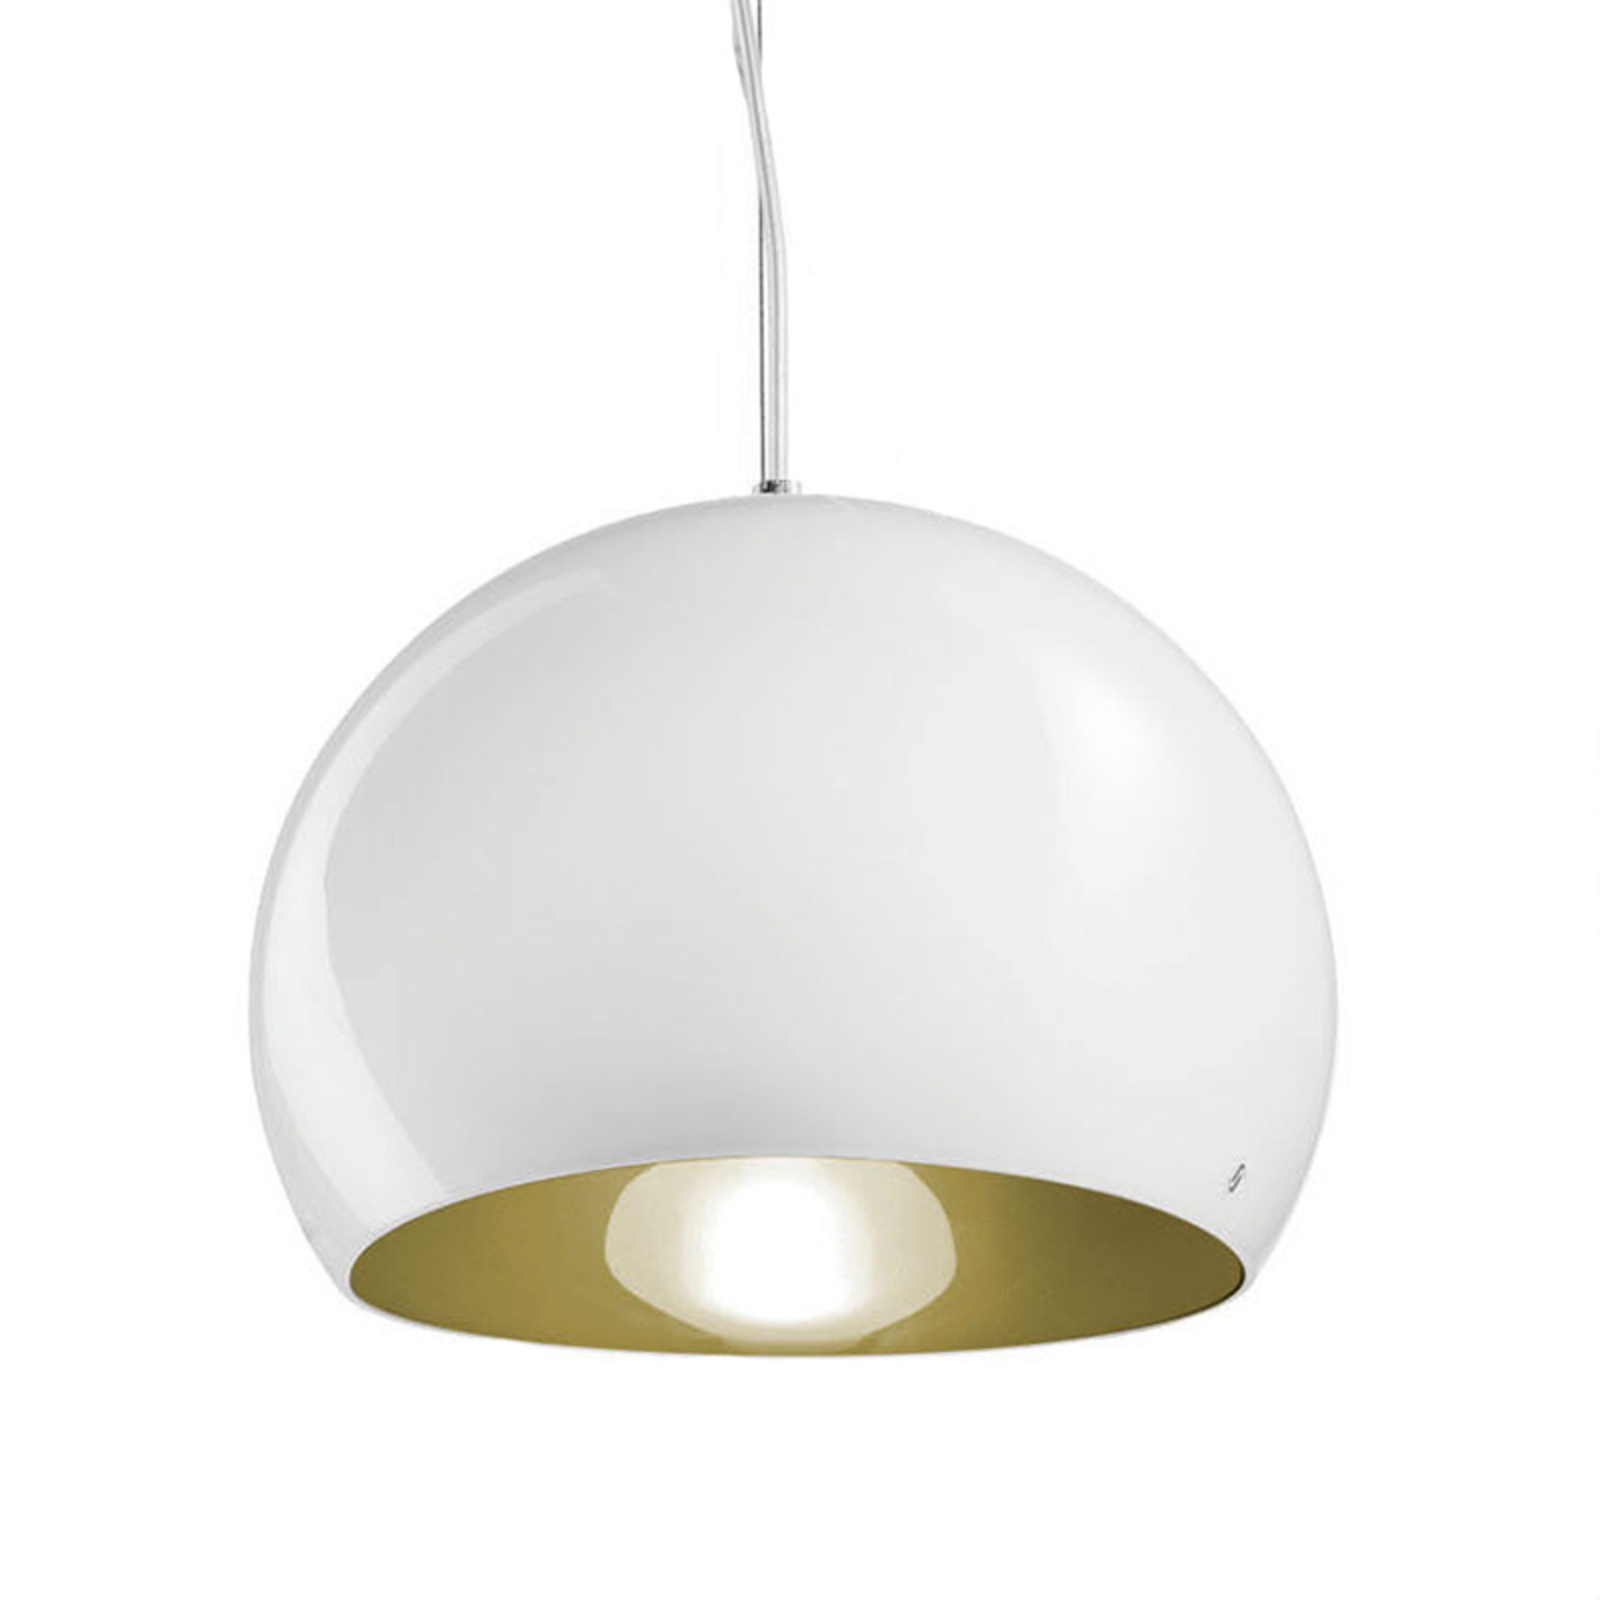 Lampa wisząca Surface Ø 27 cm, E27 biała/zielona